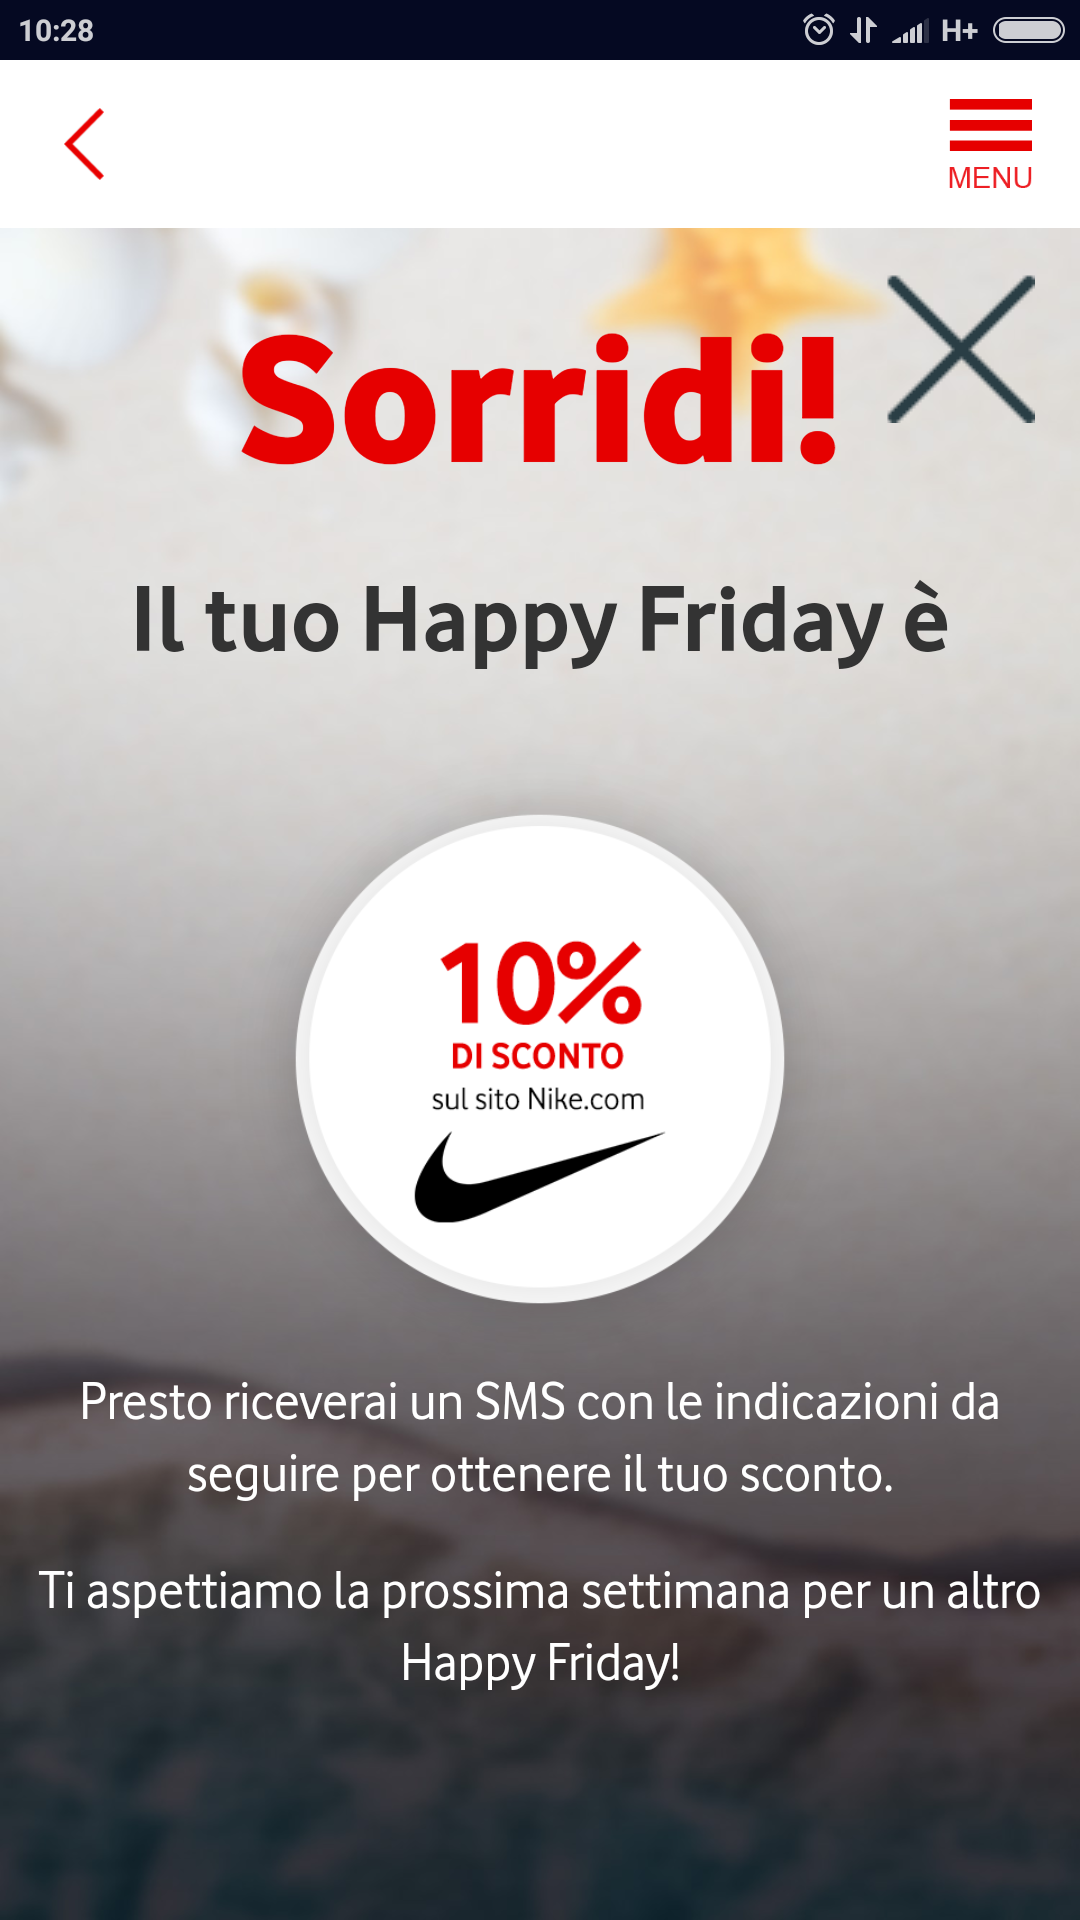 Happy Friday di Vodafone regala oggi uno sconto a tutti i suoi clienti